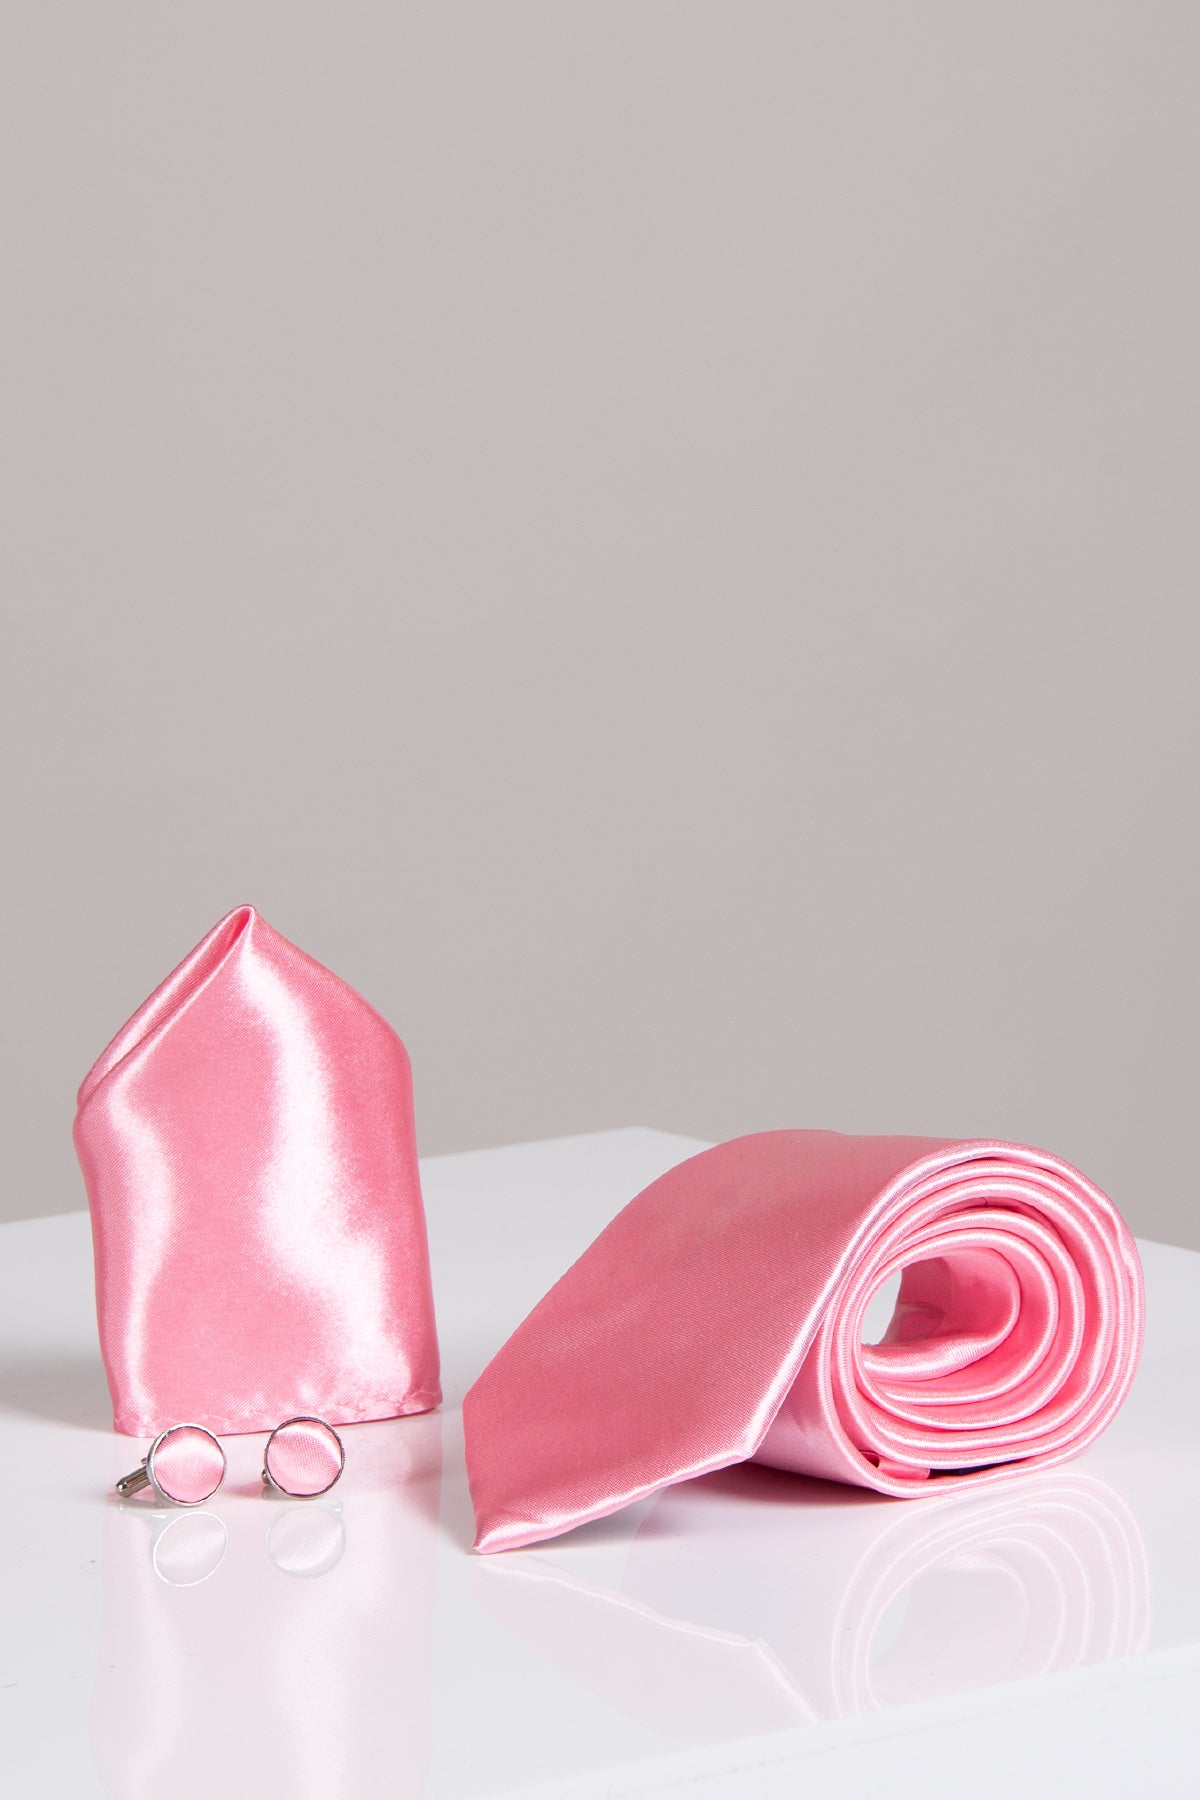 ST - Satin Tie, Cufflink & Pocket Square Set In Blush Pink